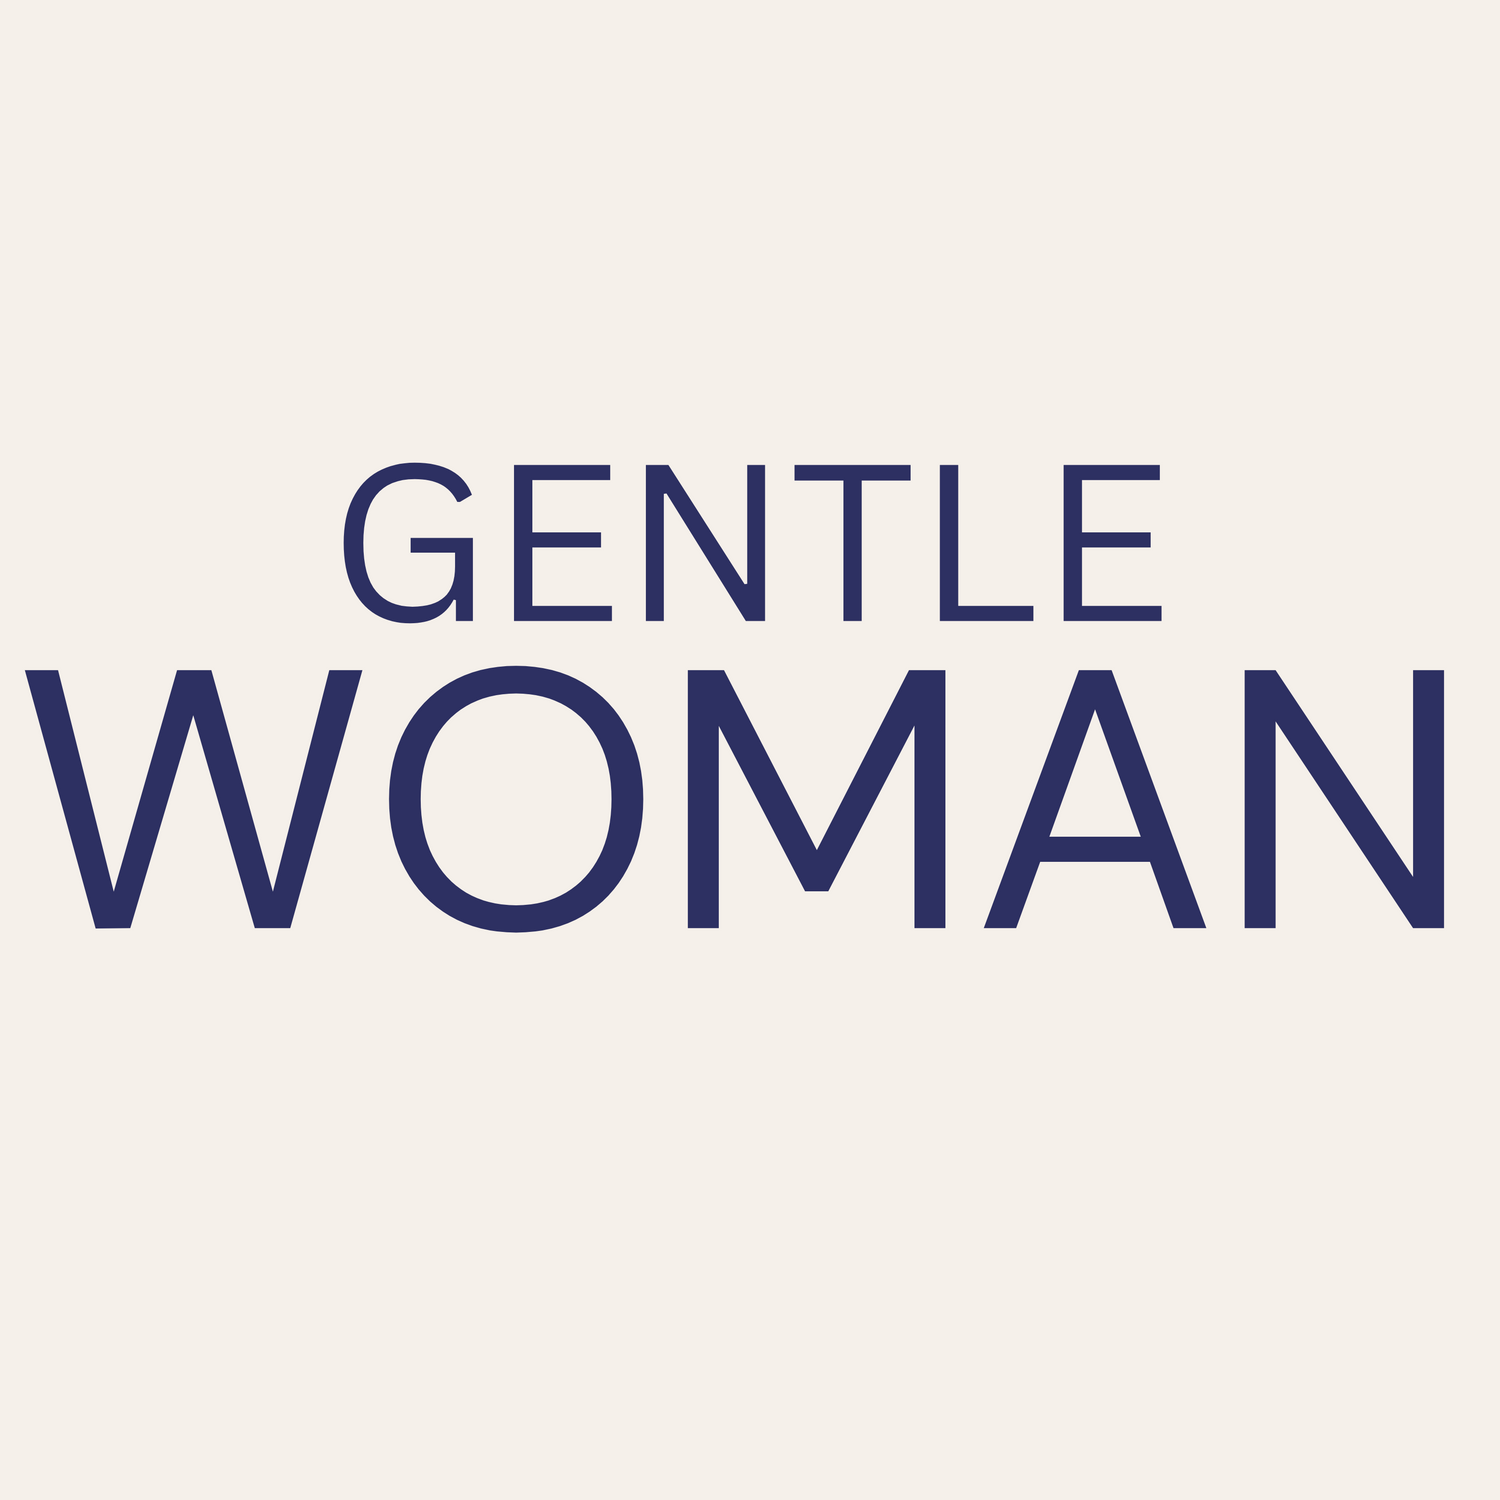 GENTLE(WOMAN)